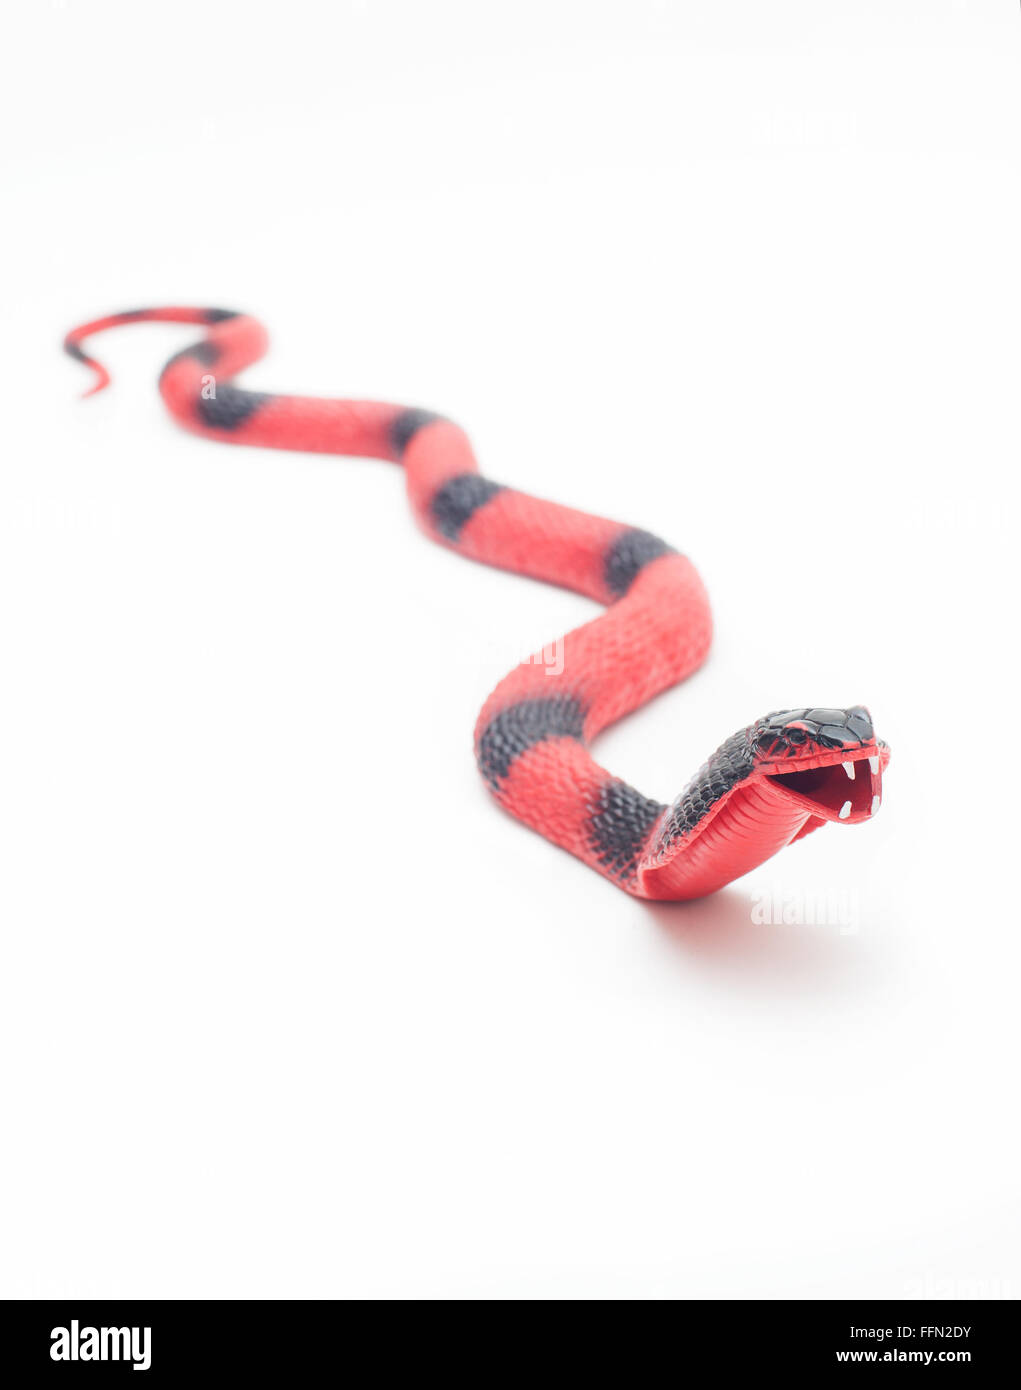 Cobra de serpiente de juguete Foto de stock